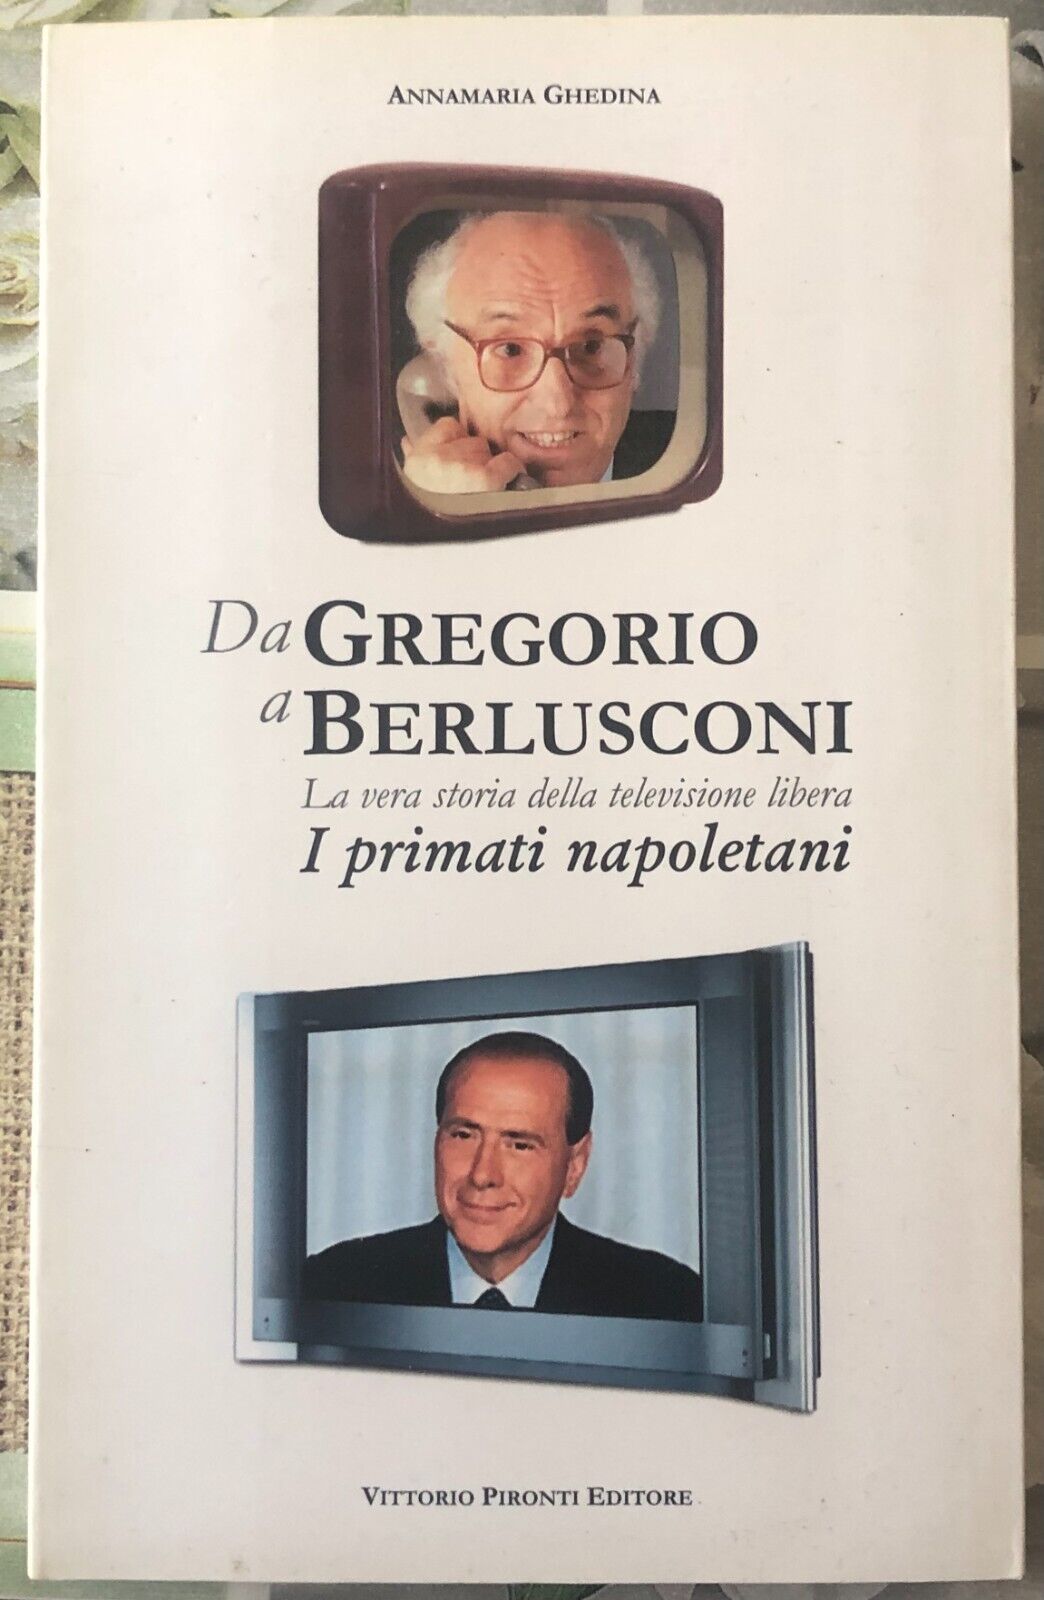 Da Gregorio a Berlusconi. I primati napoletani di Annamaria Ghedina,  2003,  Vit